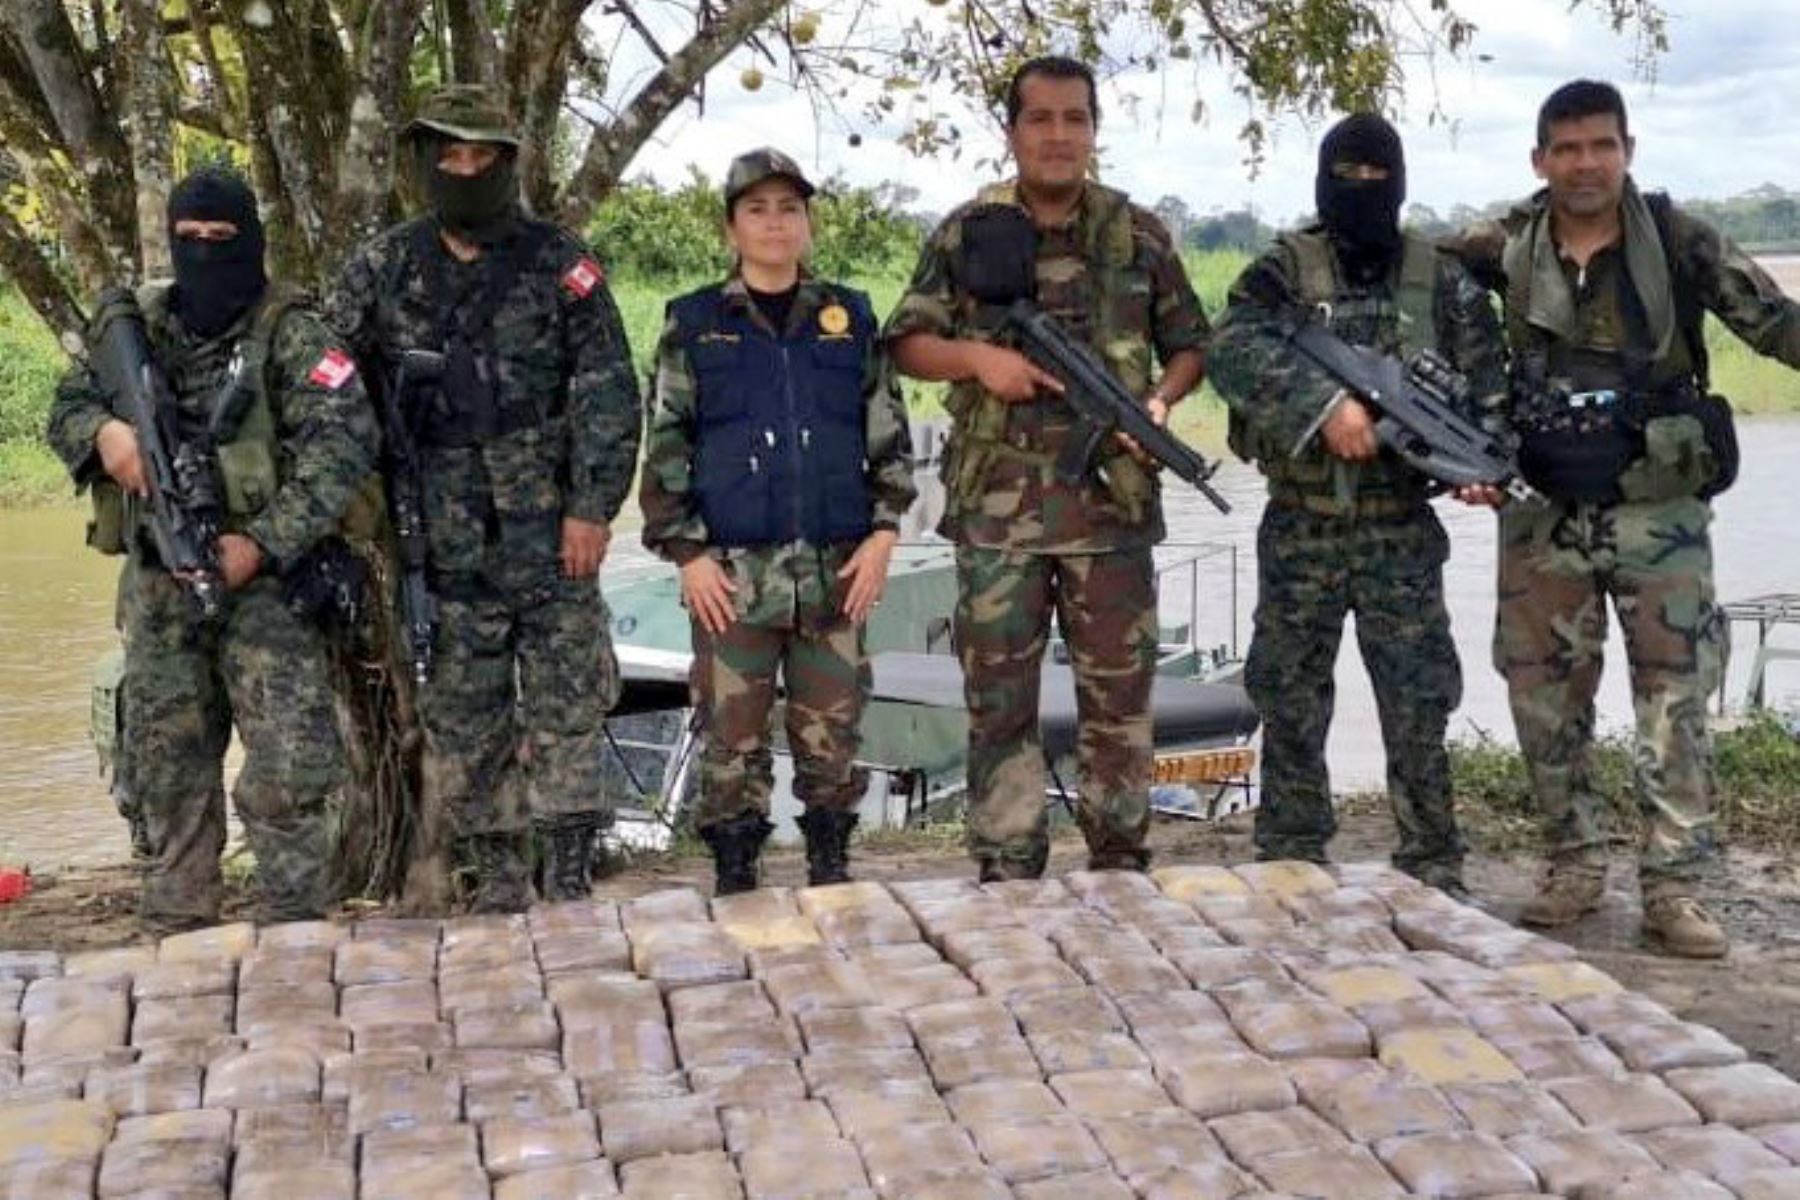 Un cargamento de 1,200 kilos de marihuana, valorizada en más de 5 millones de dólares, fue incautado en un operativo de control fluvial en el sector Alto del río Putumayo ejecutado por la Marina de Guerra del Perú, en conjunto con la Policía Nacional, y con el apoyo de la Armada de Colombia. Foto: Marina de Guerra del Perú.